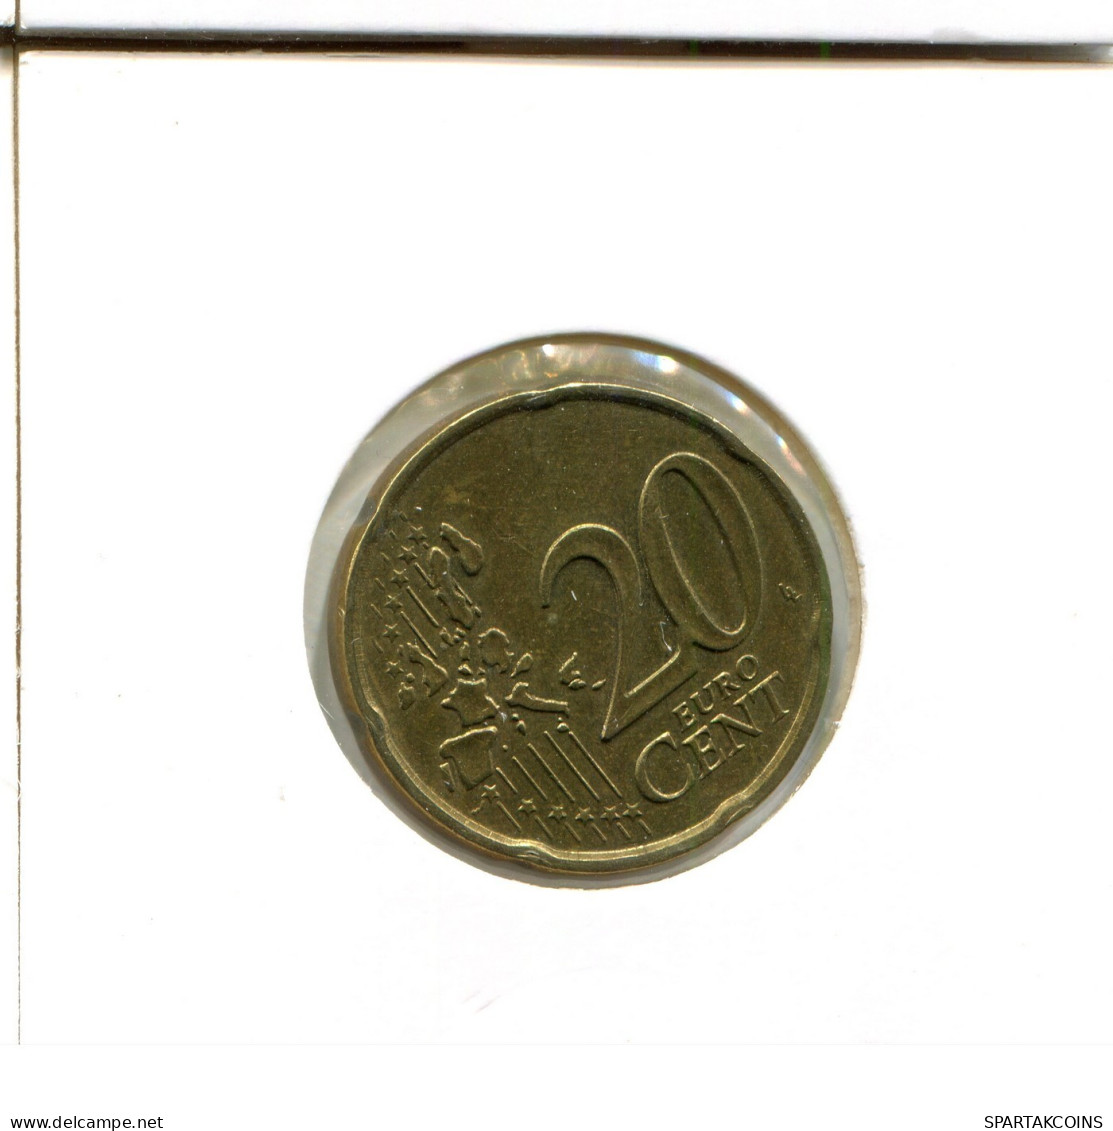 20 EURO CENTS 2001 FRANKREICH FRANCE Französisch Münze #EU120.D.A - France